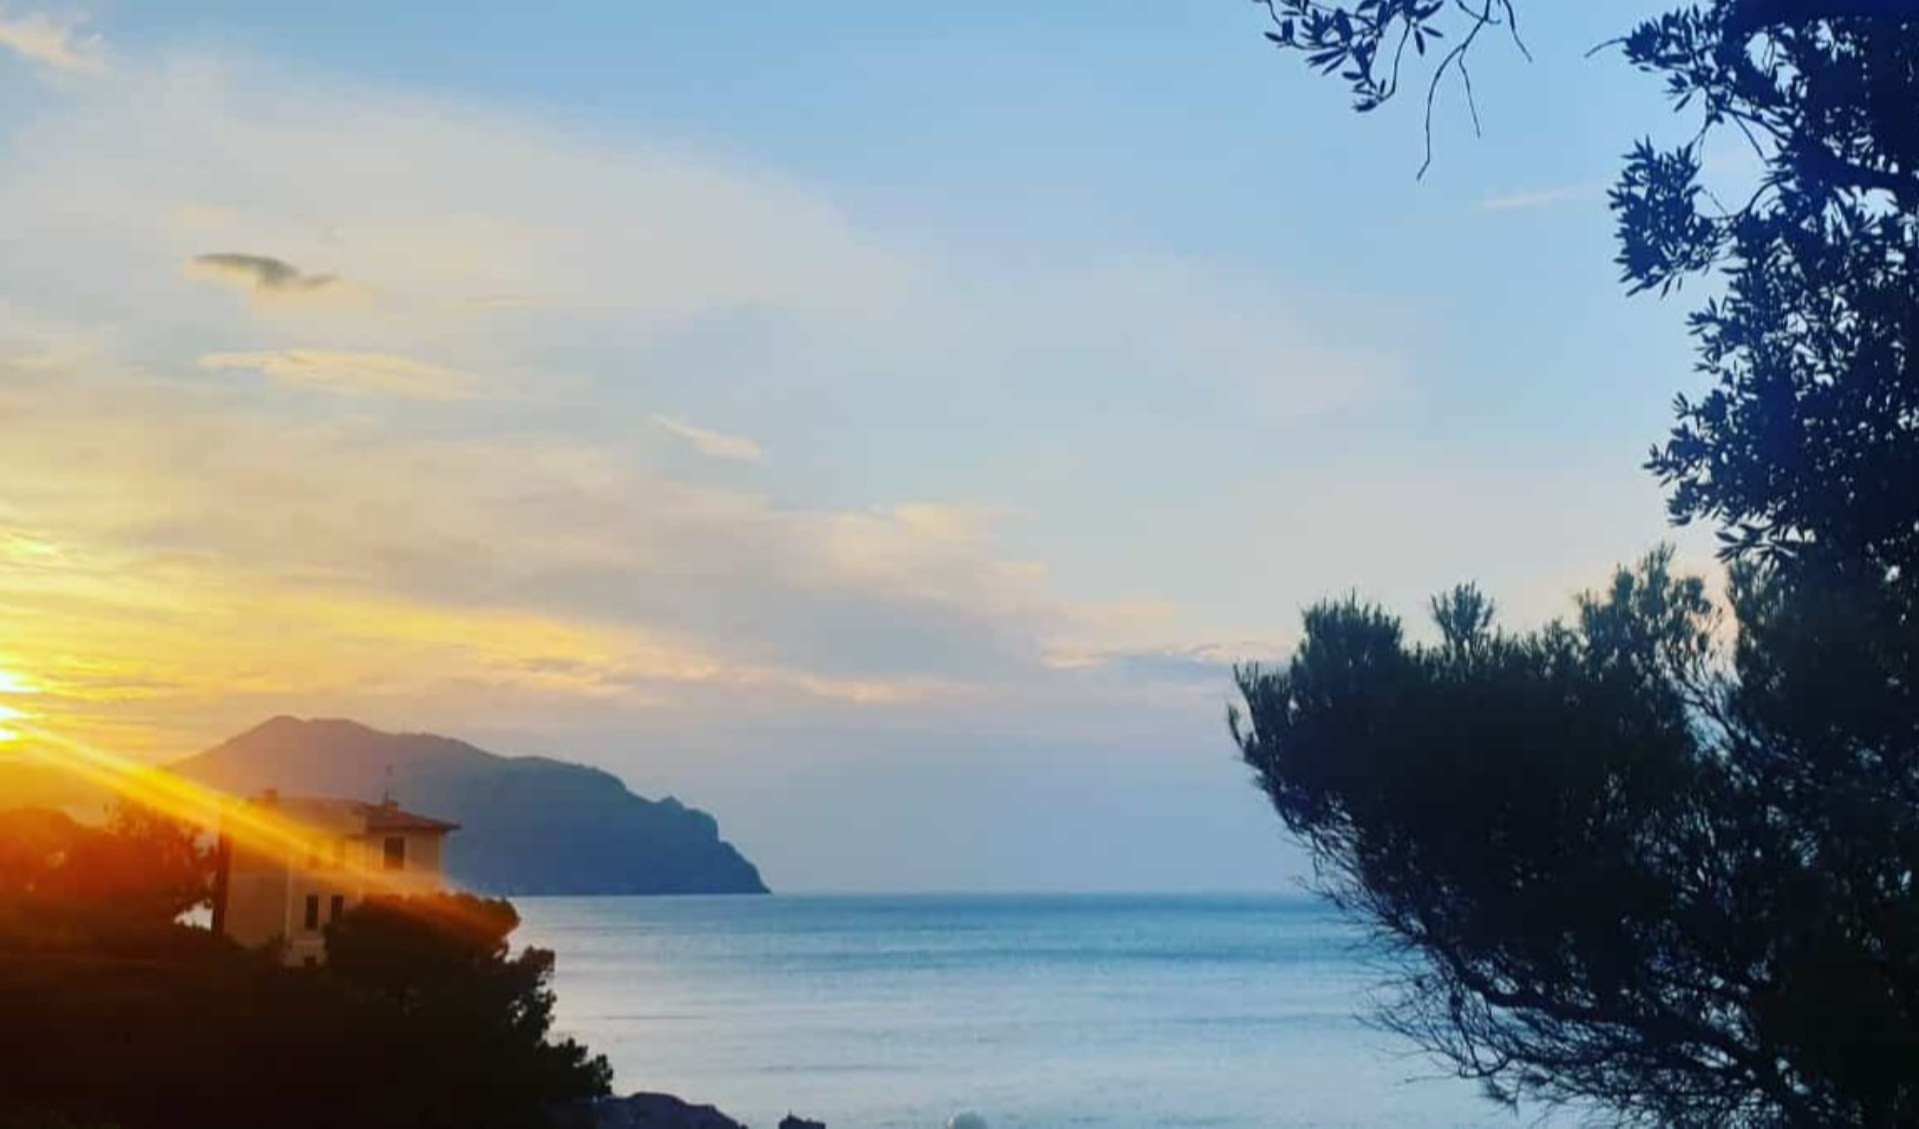 Meteo in Liguria tra sole, nubi e vento: le previsioni per le prossime ore